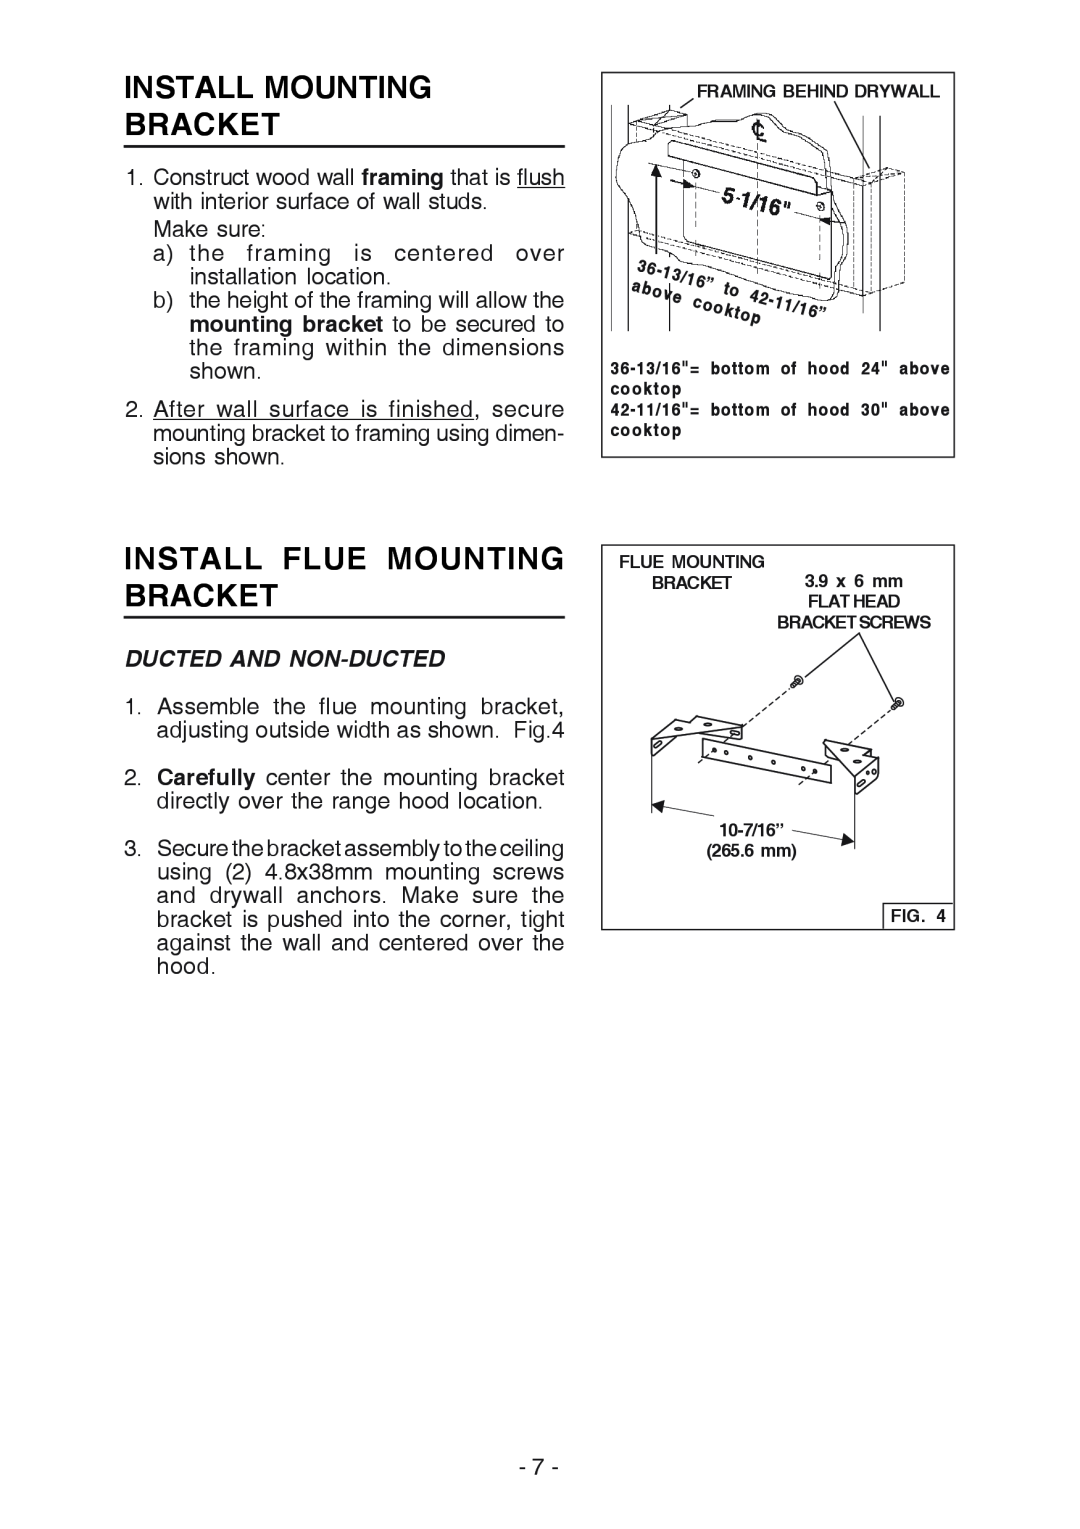 Broan K7388 manual Install Mounting Bracket, Install Flue Mounting Bracket, Ducted And Non-Ducted 